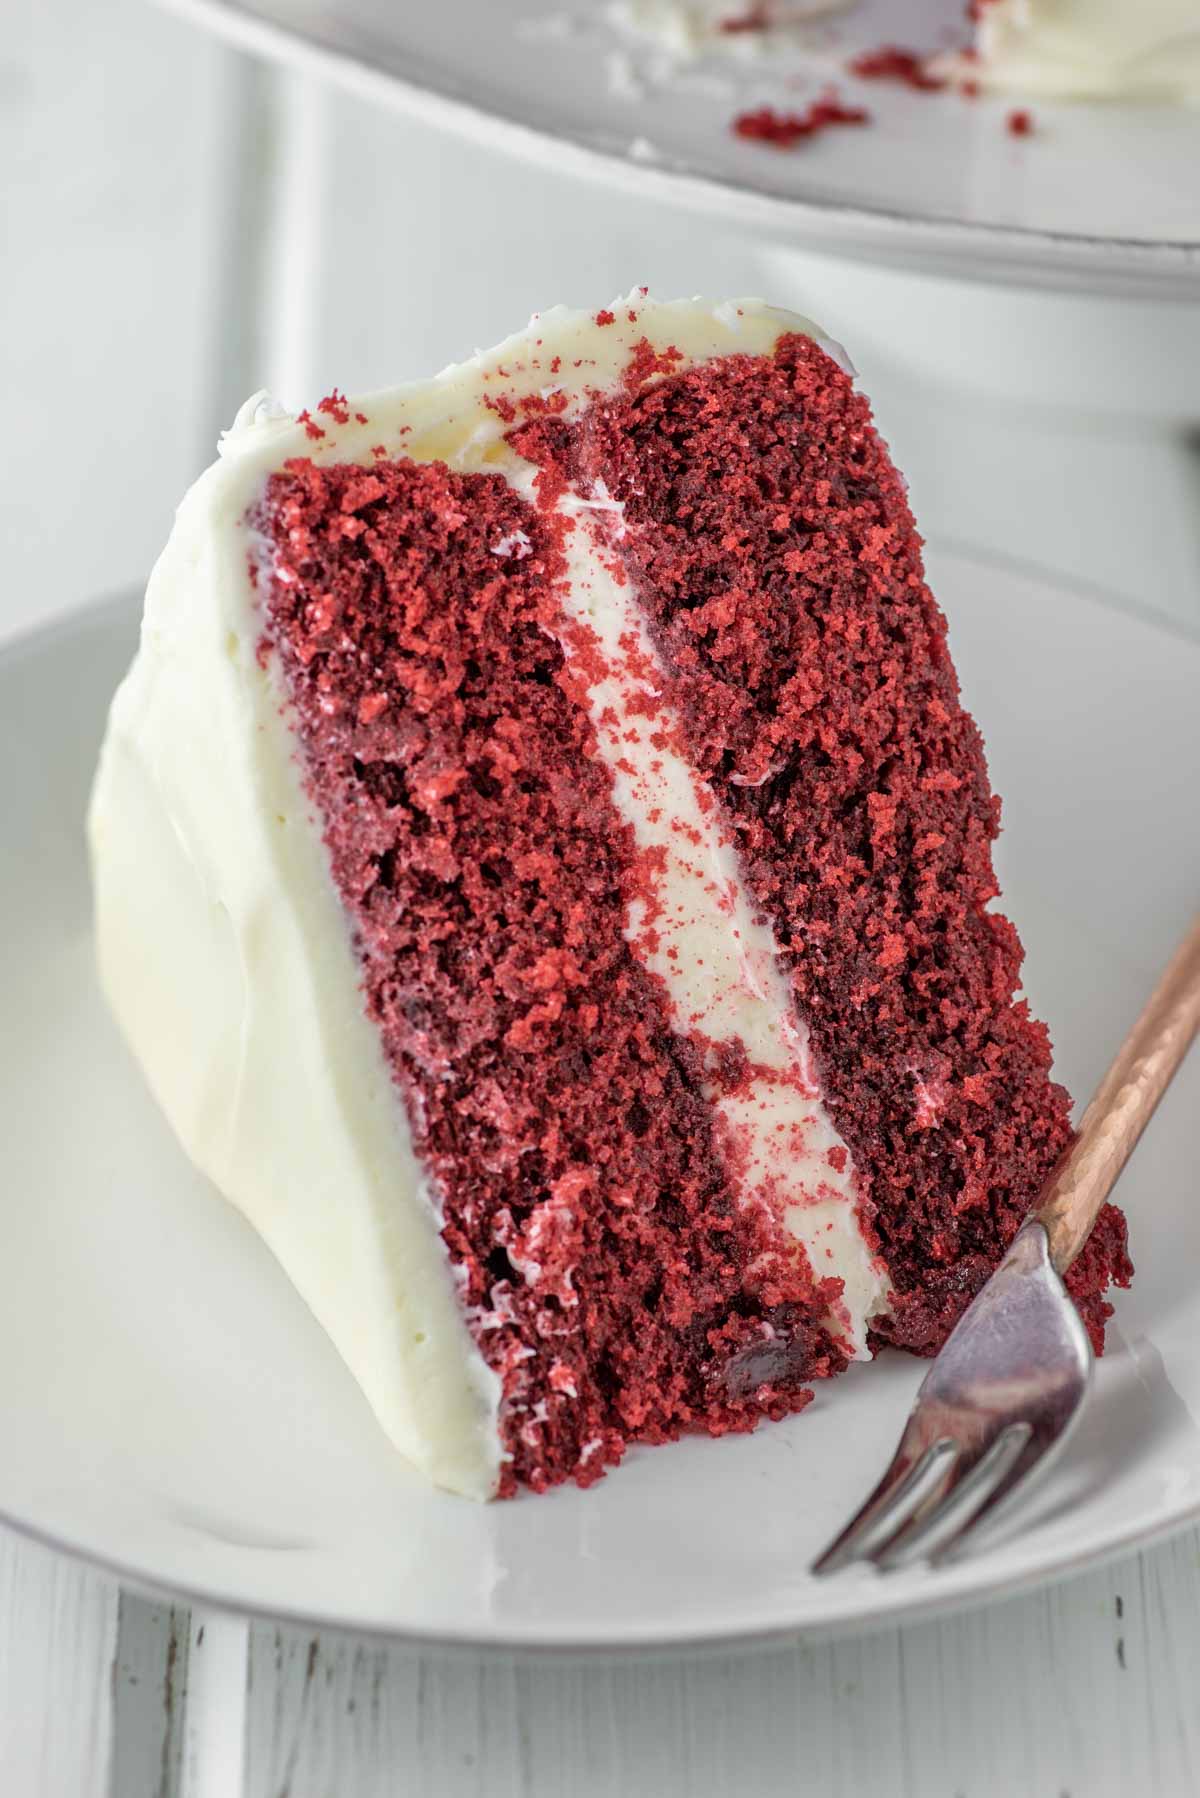 slice of red velvet cake on white plate with fork